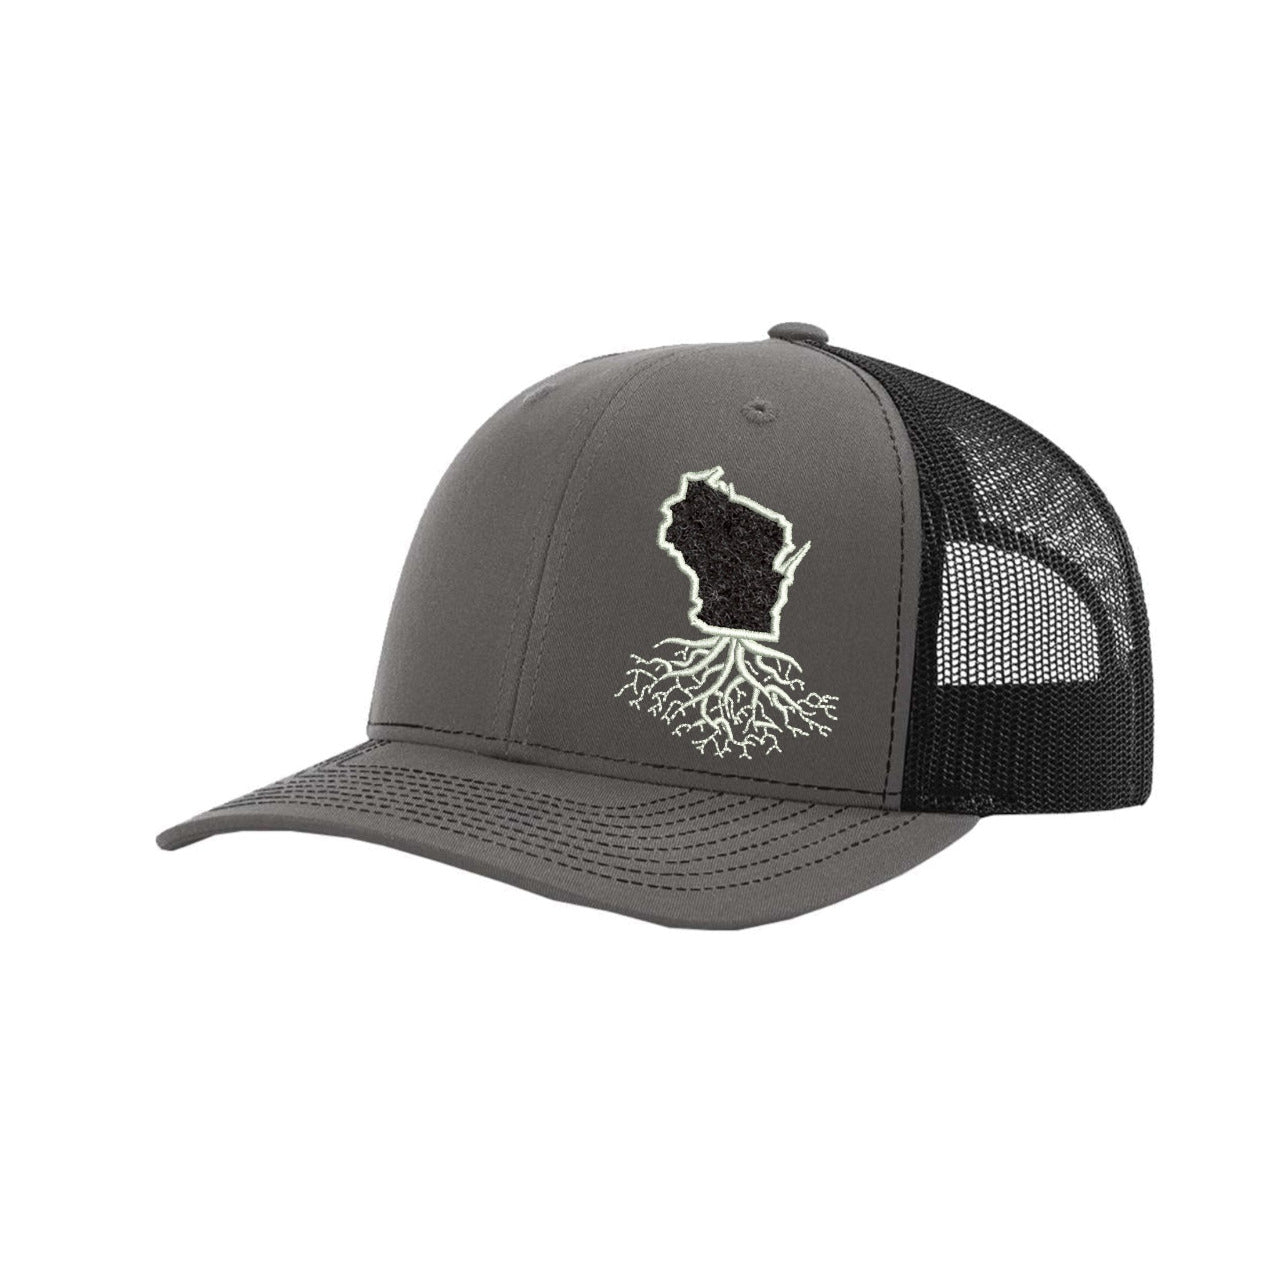 Wisconsin Hook & Loop Trucker Cap - Hats